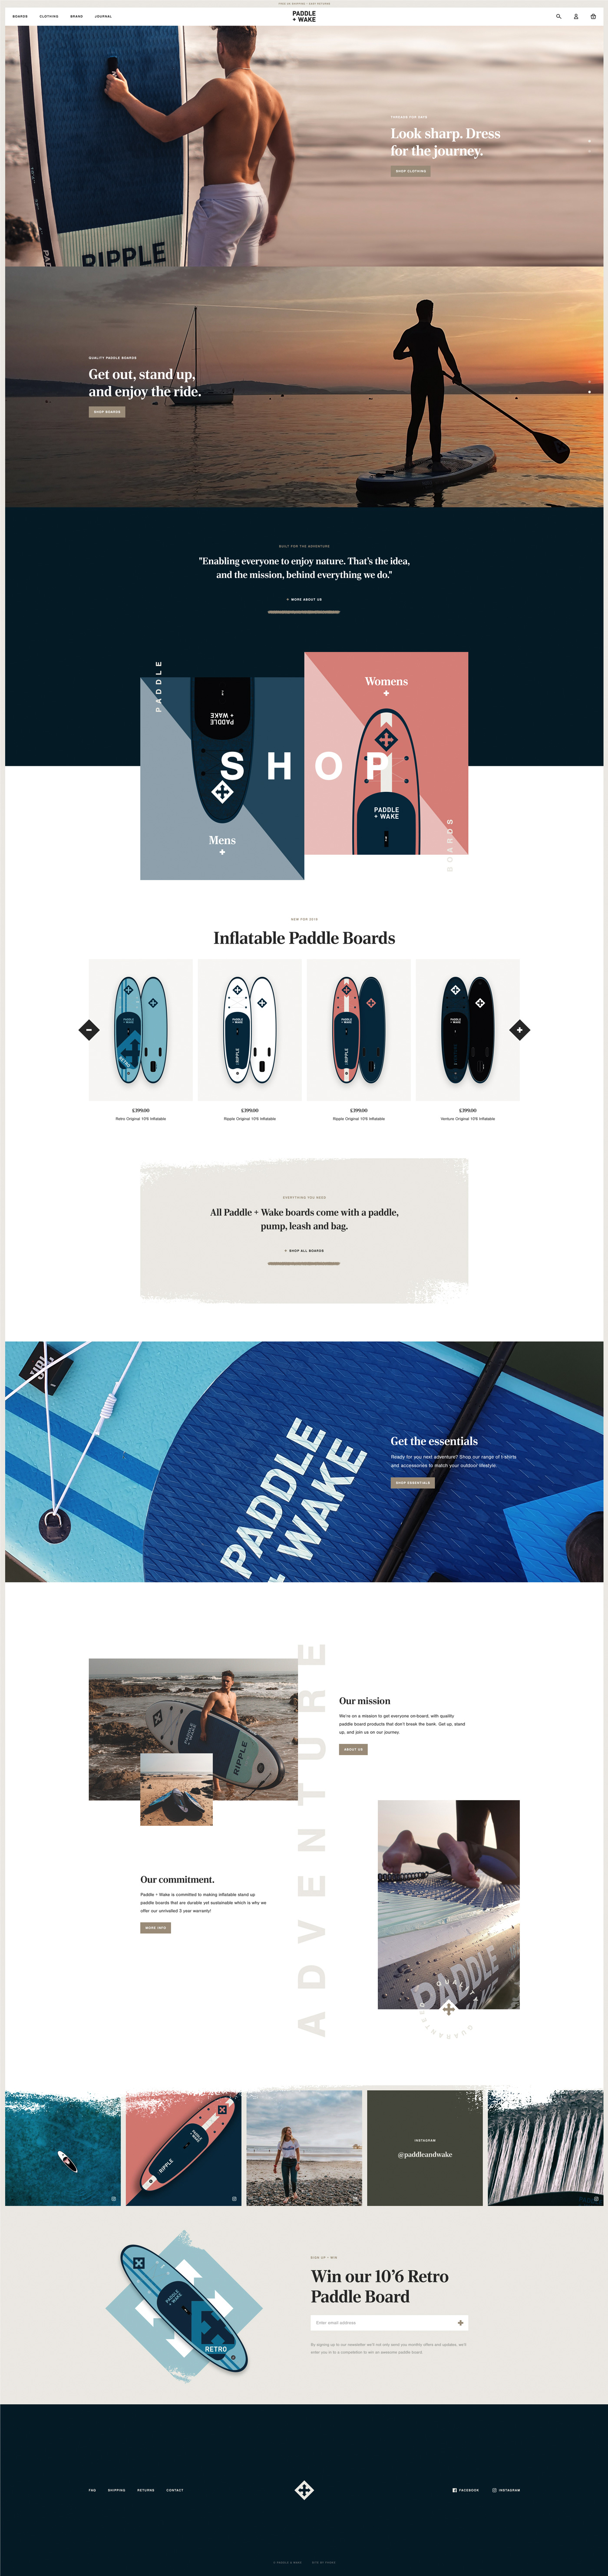 Fhoke Design Paddle & Wake Shopify Website